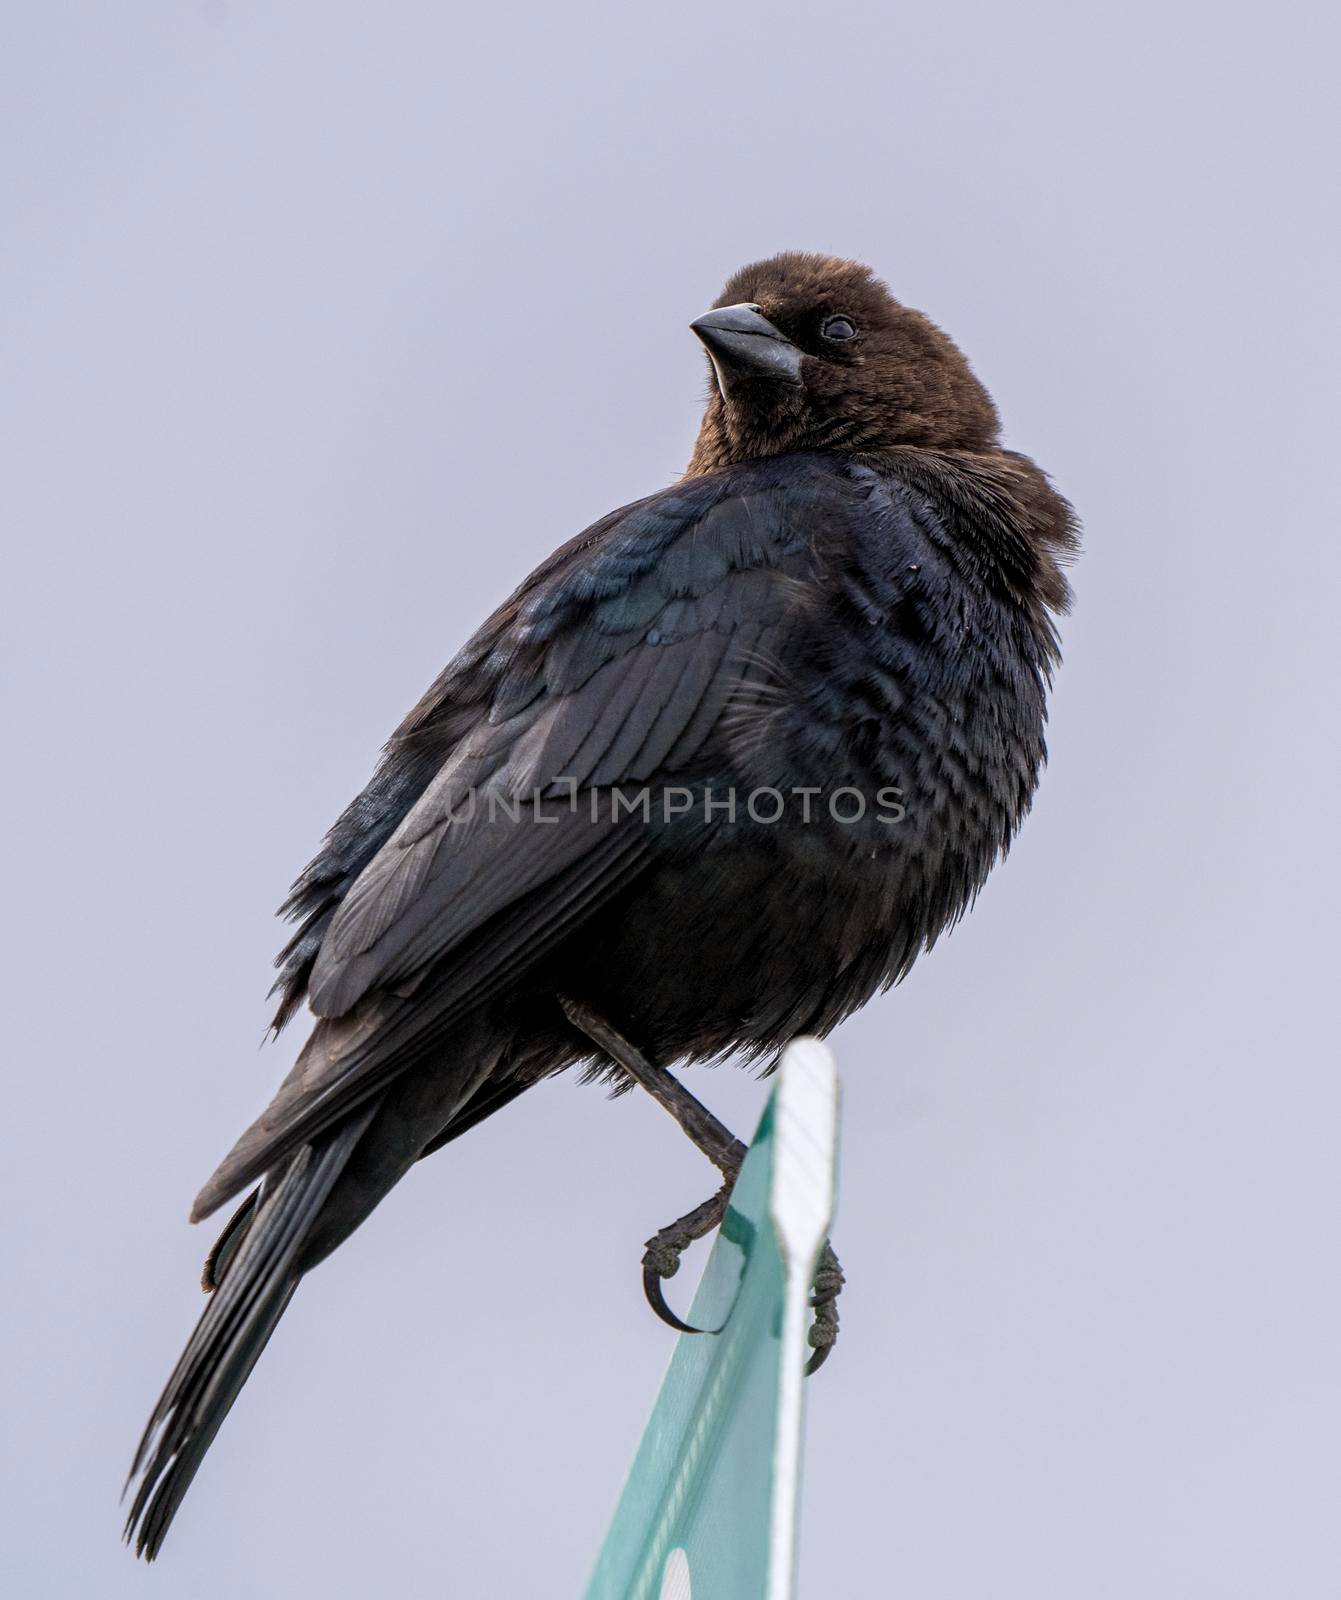 Cowbird in Saskatchewan by pictureguy